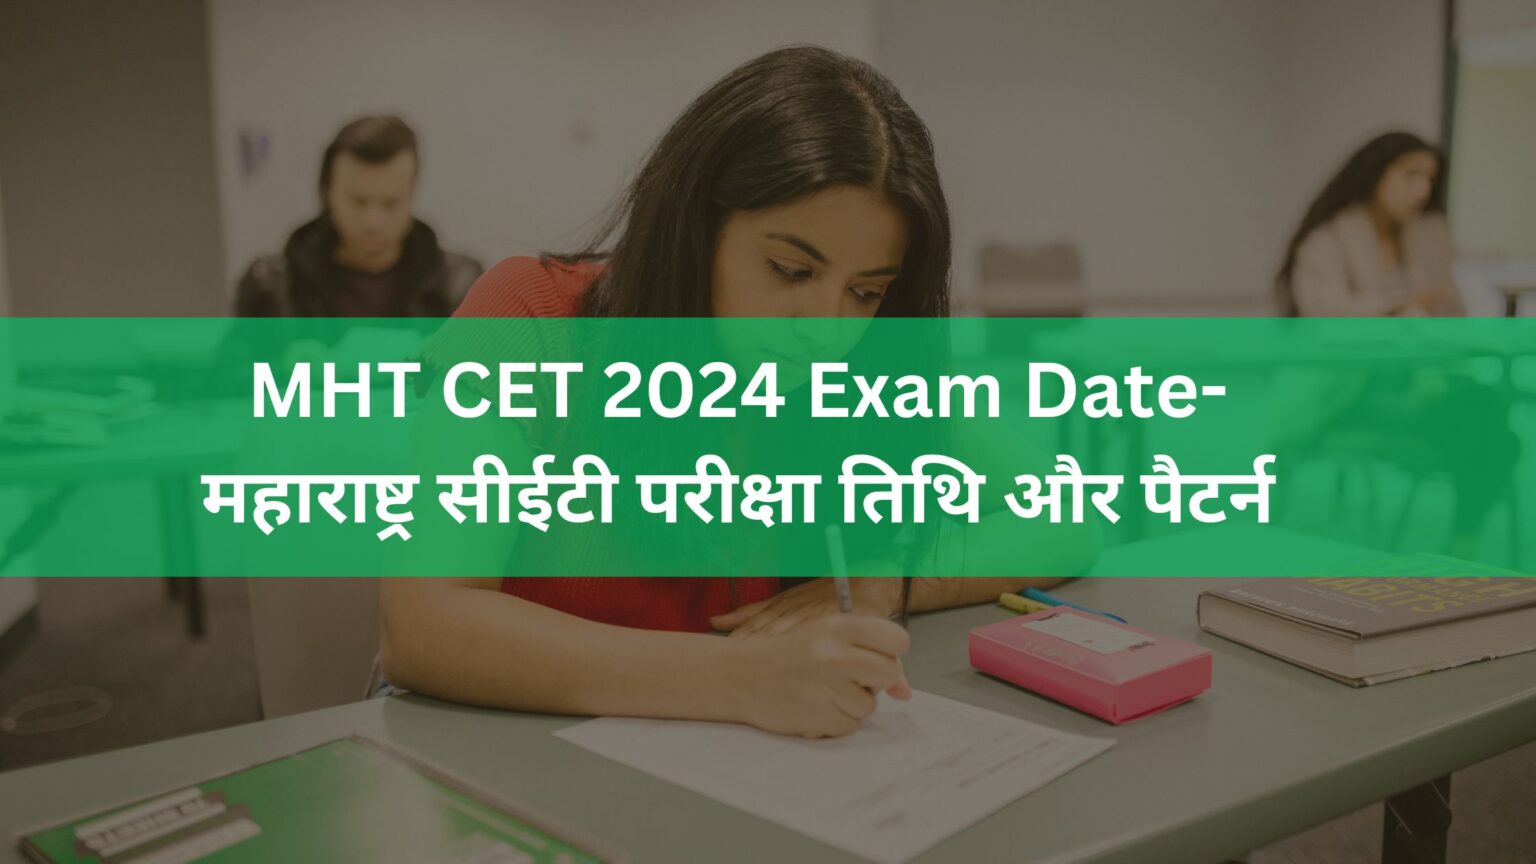 MHT CET 2024 Exam Dateमहाराष्ट्र सीईटी परीक्षा तिथि और पैटर्न